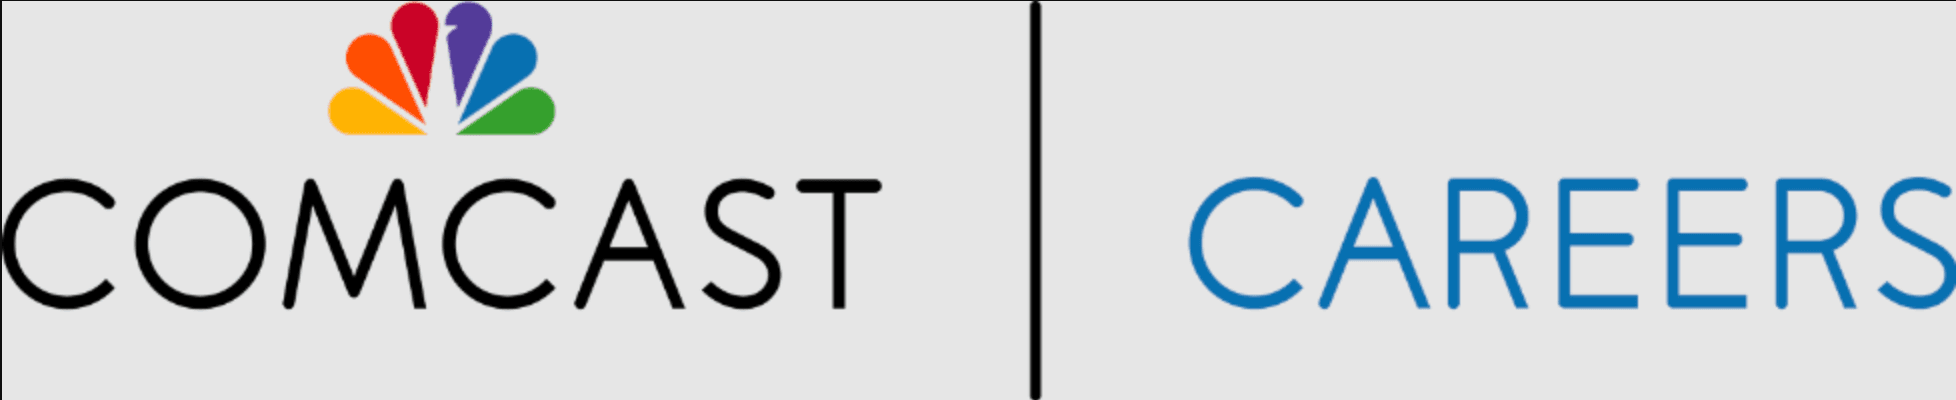 Comcast Corporation logo